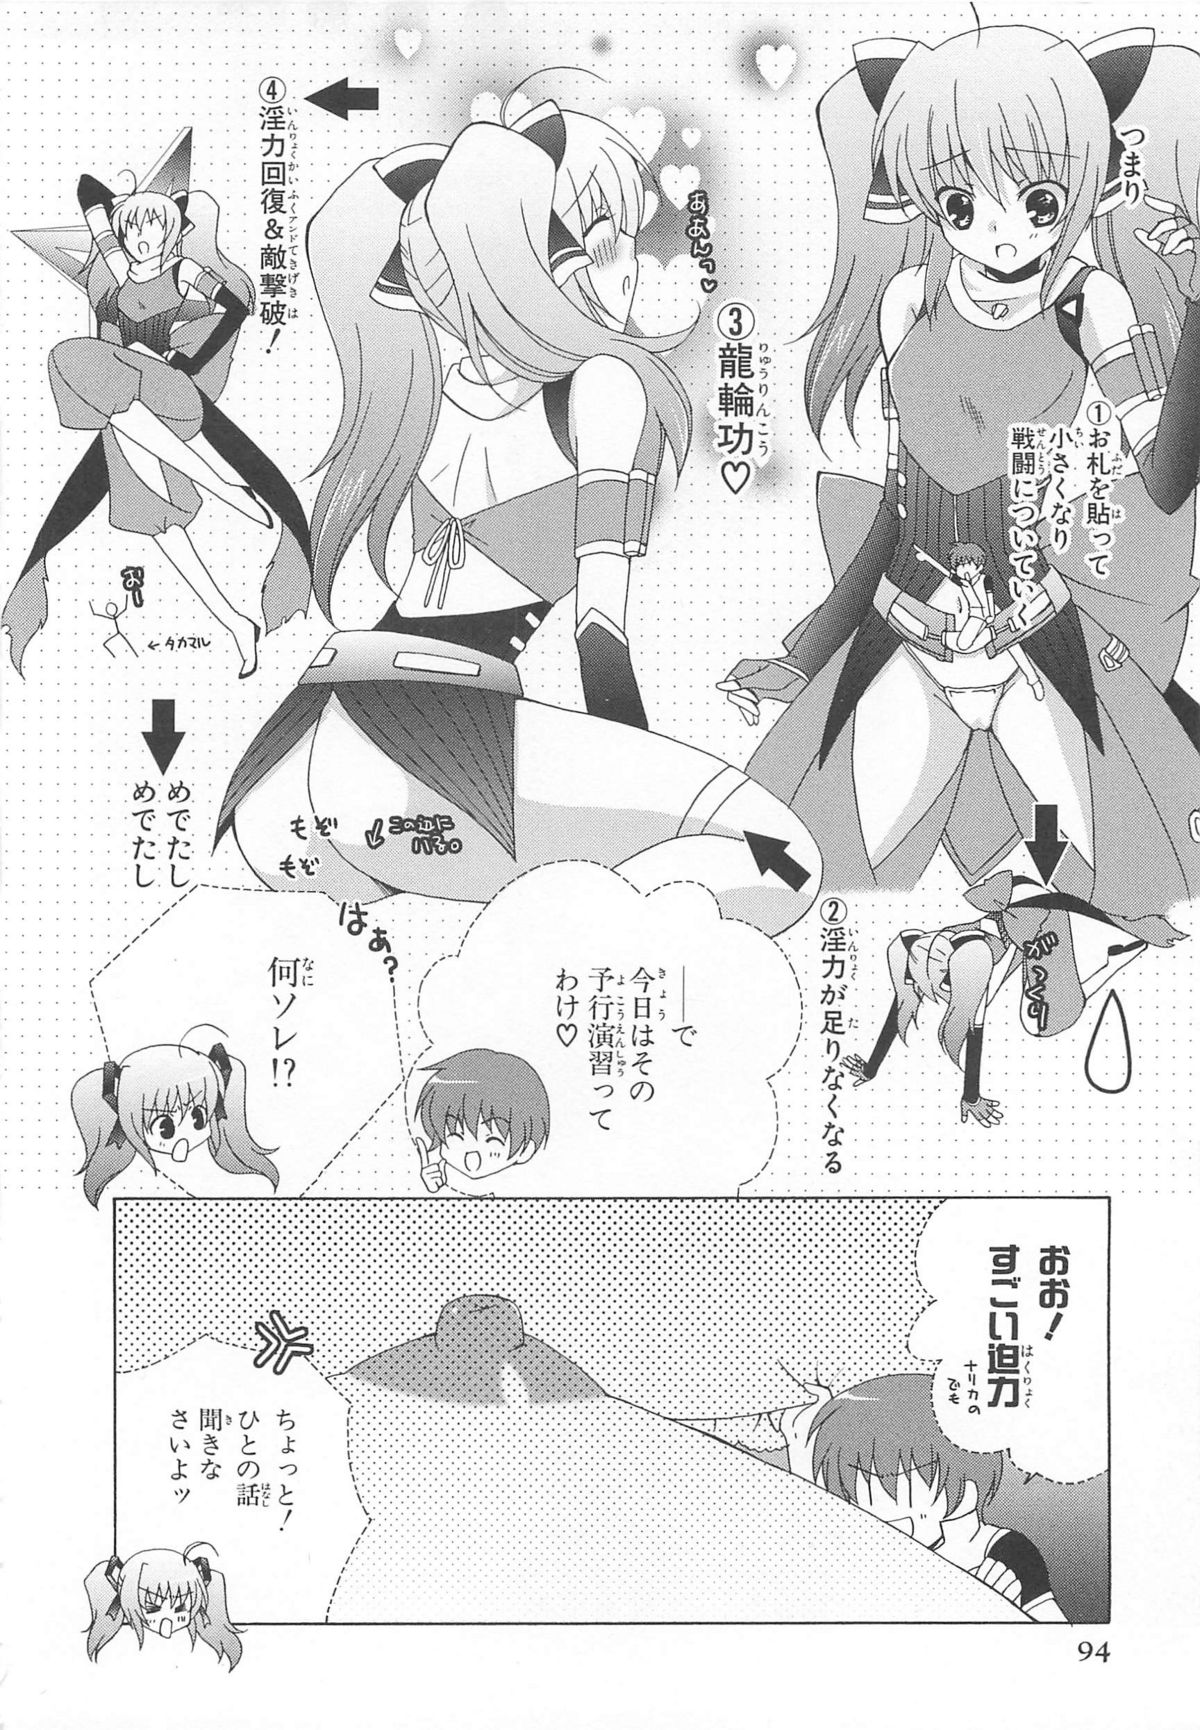 [アンソロジー] 超昴閃忍ハルカコミックアンソロジー Vol3 [2008-10-25]